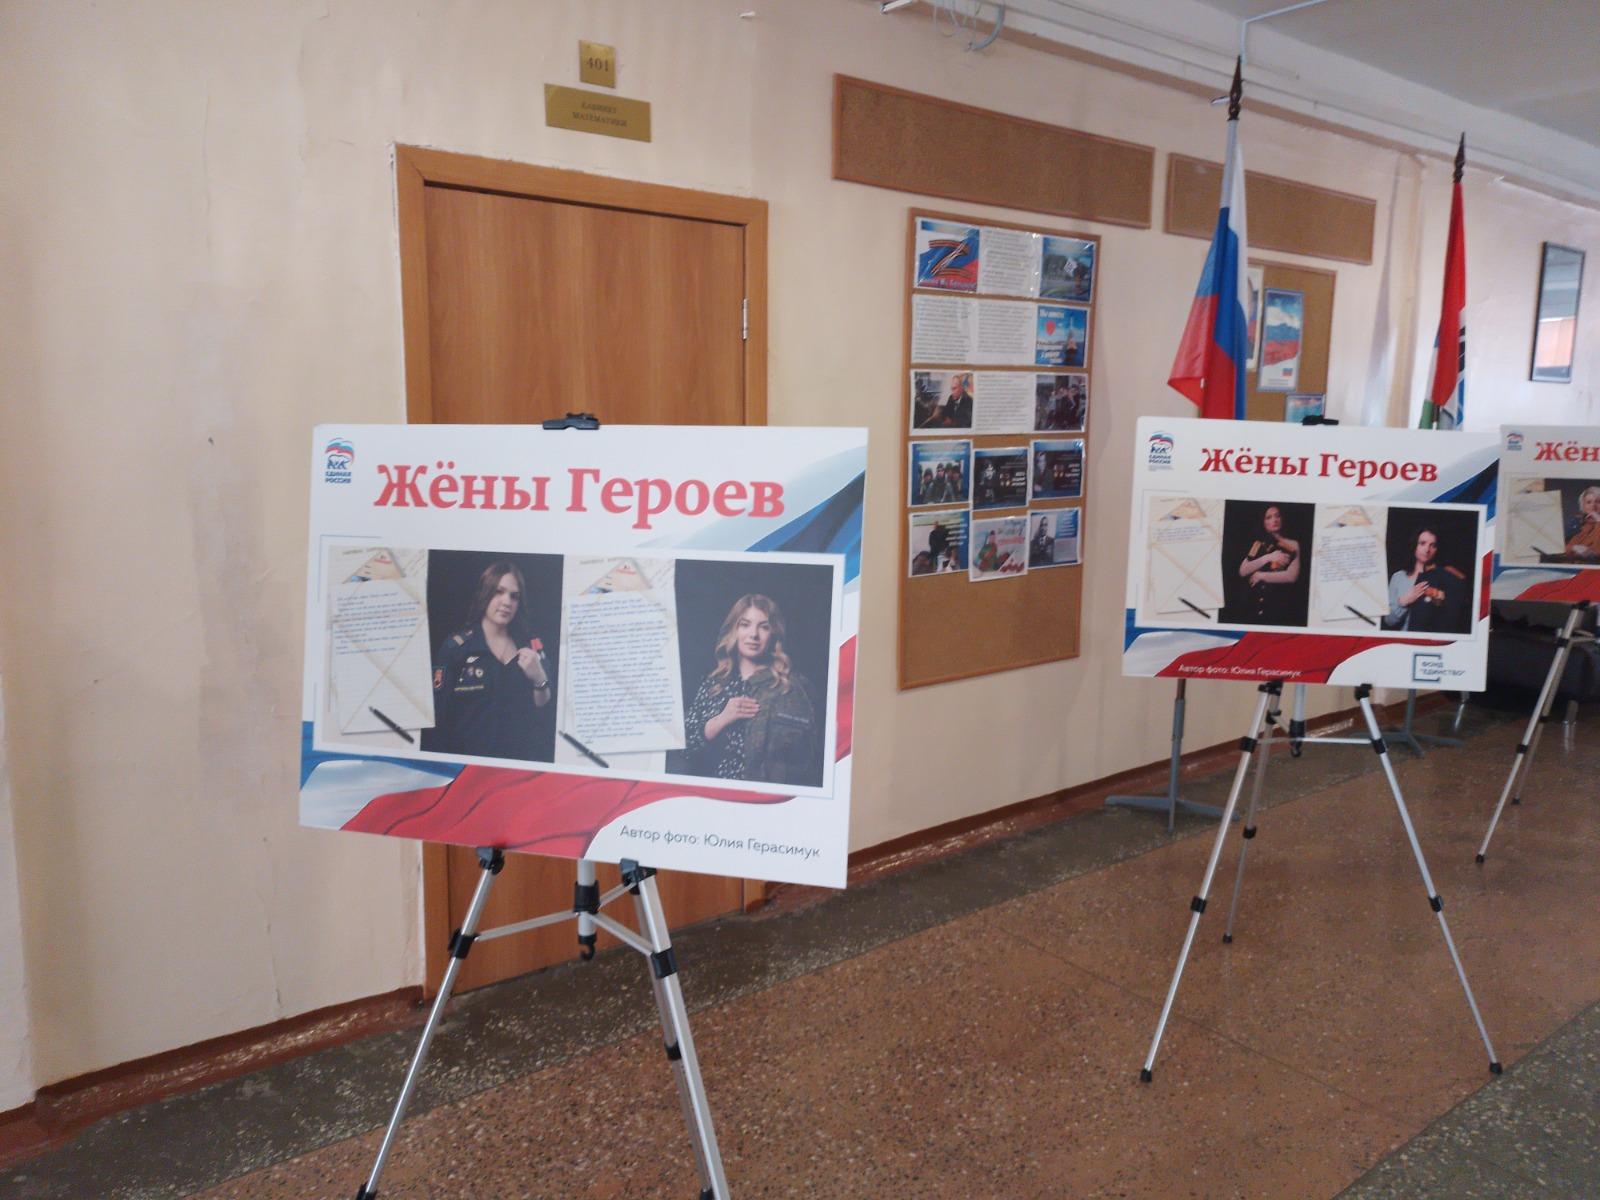 Фото В Новосибирске открылась фотовыставка «Жены героев» 2